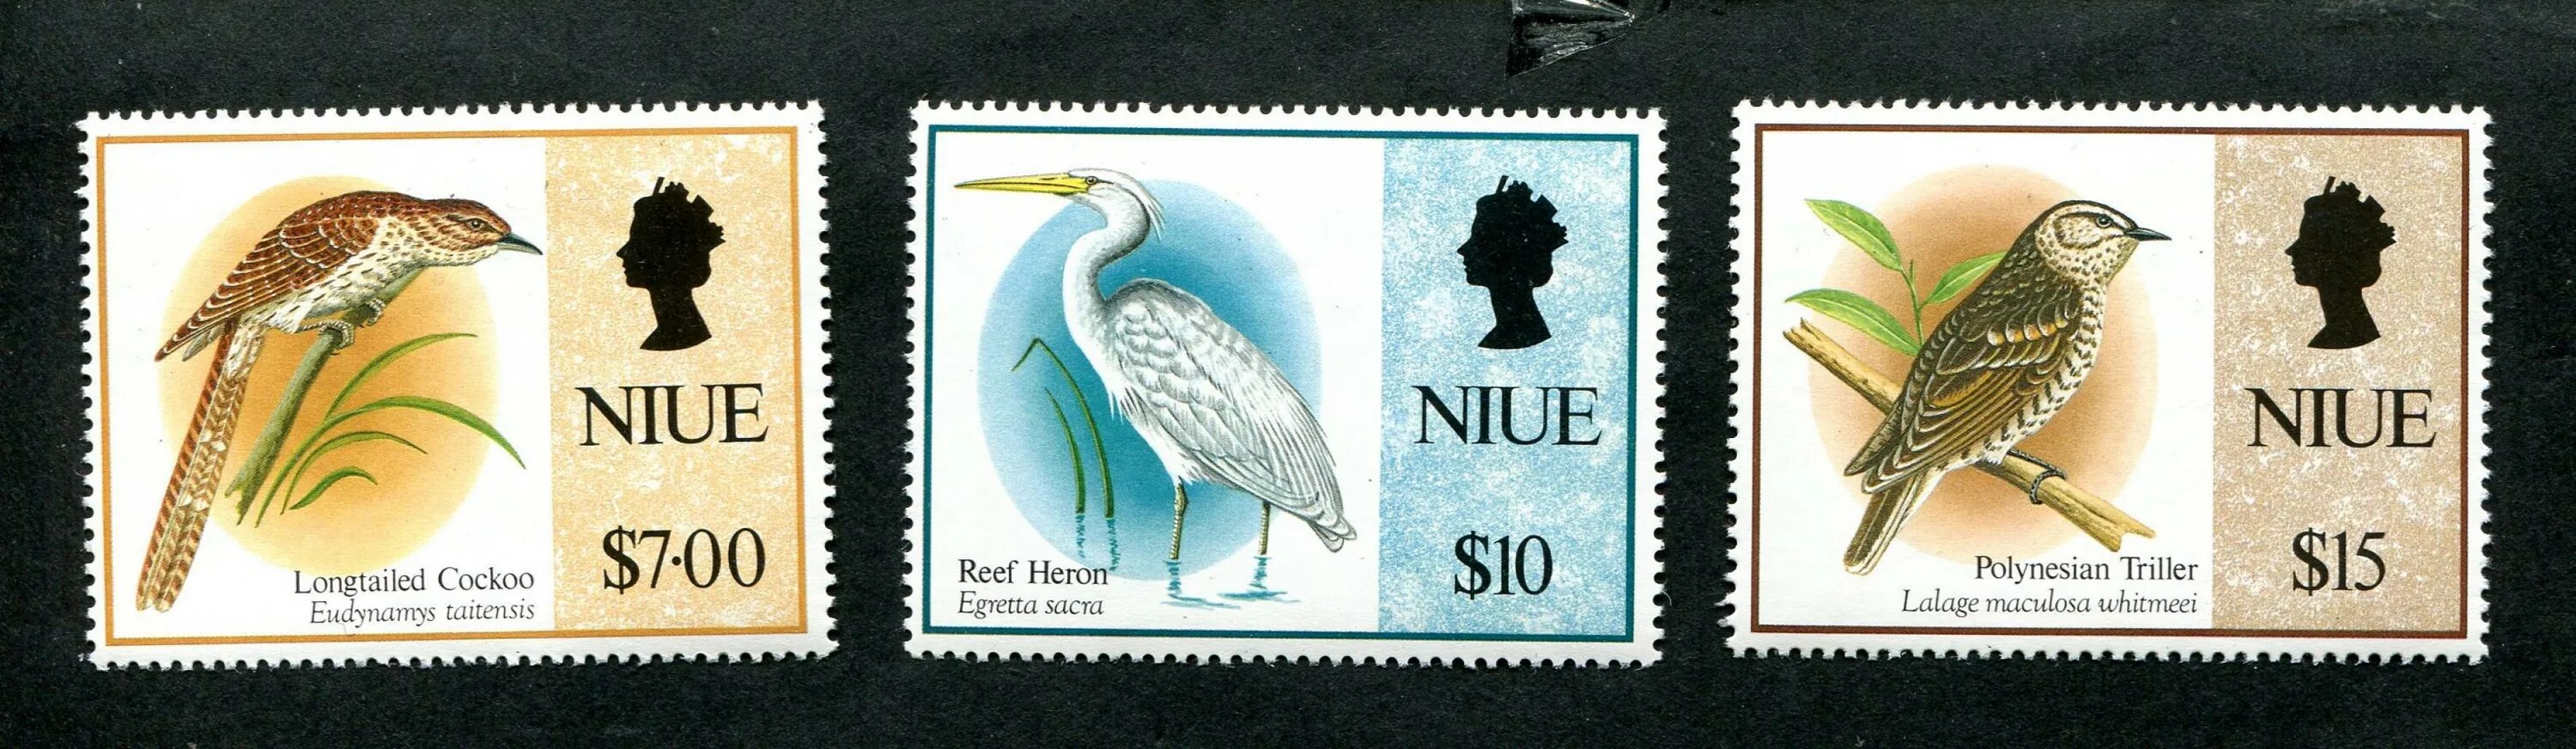 Две марки в рублях. Почтовые марки Niue природа. Почтовые марки Niue животные. Марки Индонезия лисица 1980.